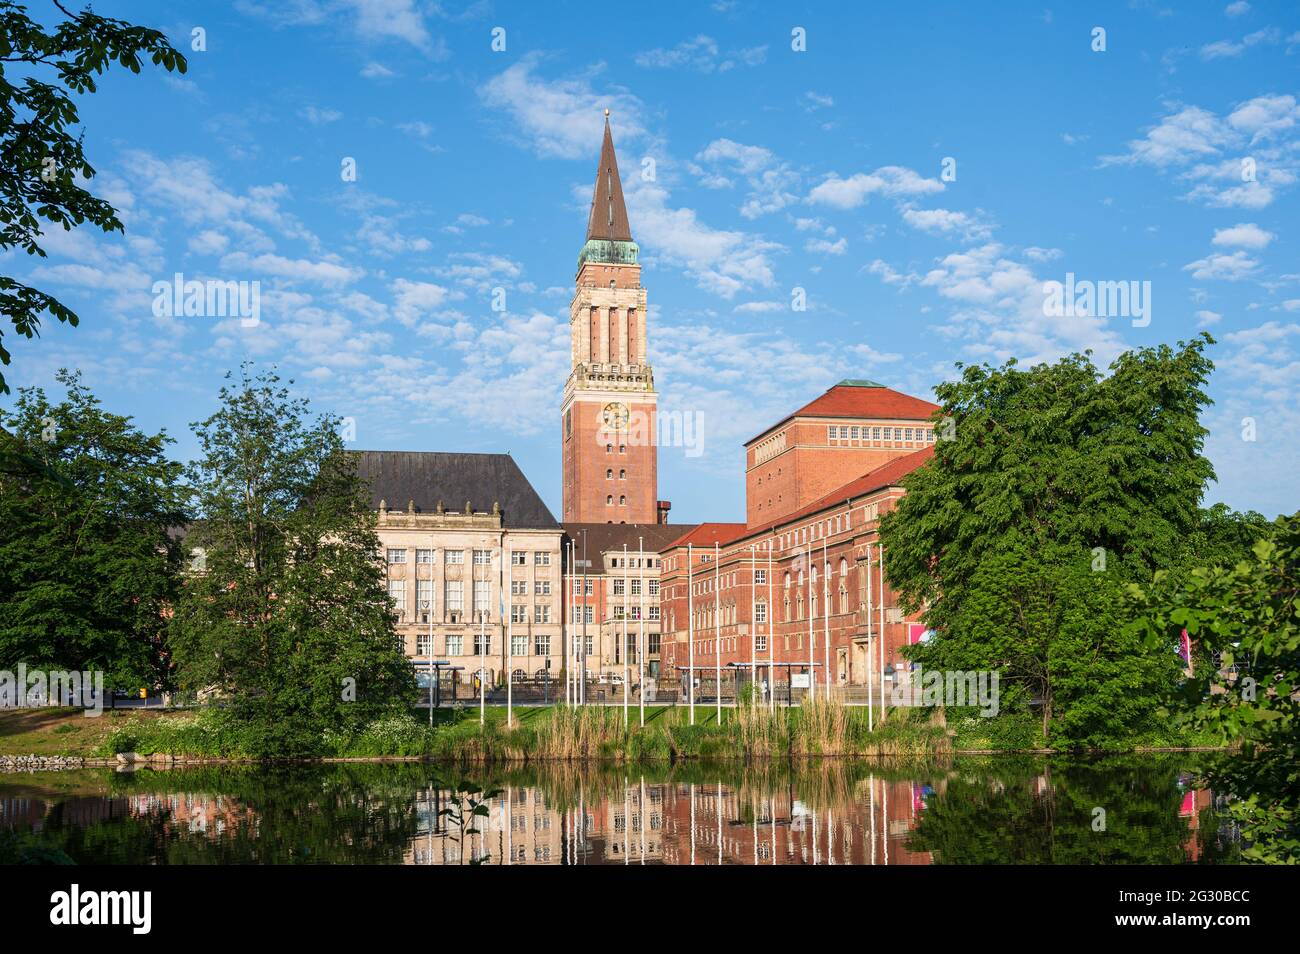 Kiel. Blick über den See Kleiner Kiel auf den Rathausplatz mit Altem Rathaus und Opernhaus im Morgenlicht Foto Stock